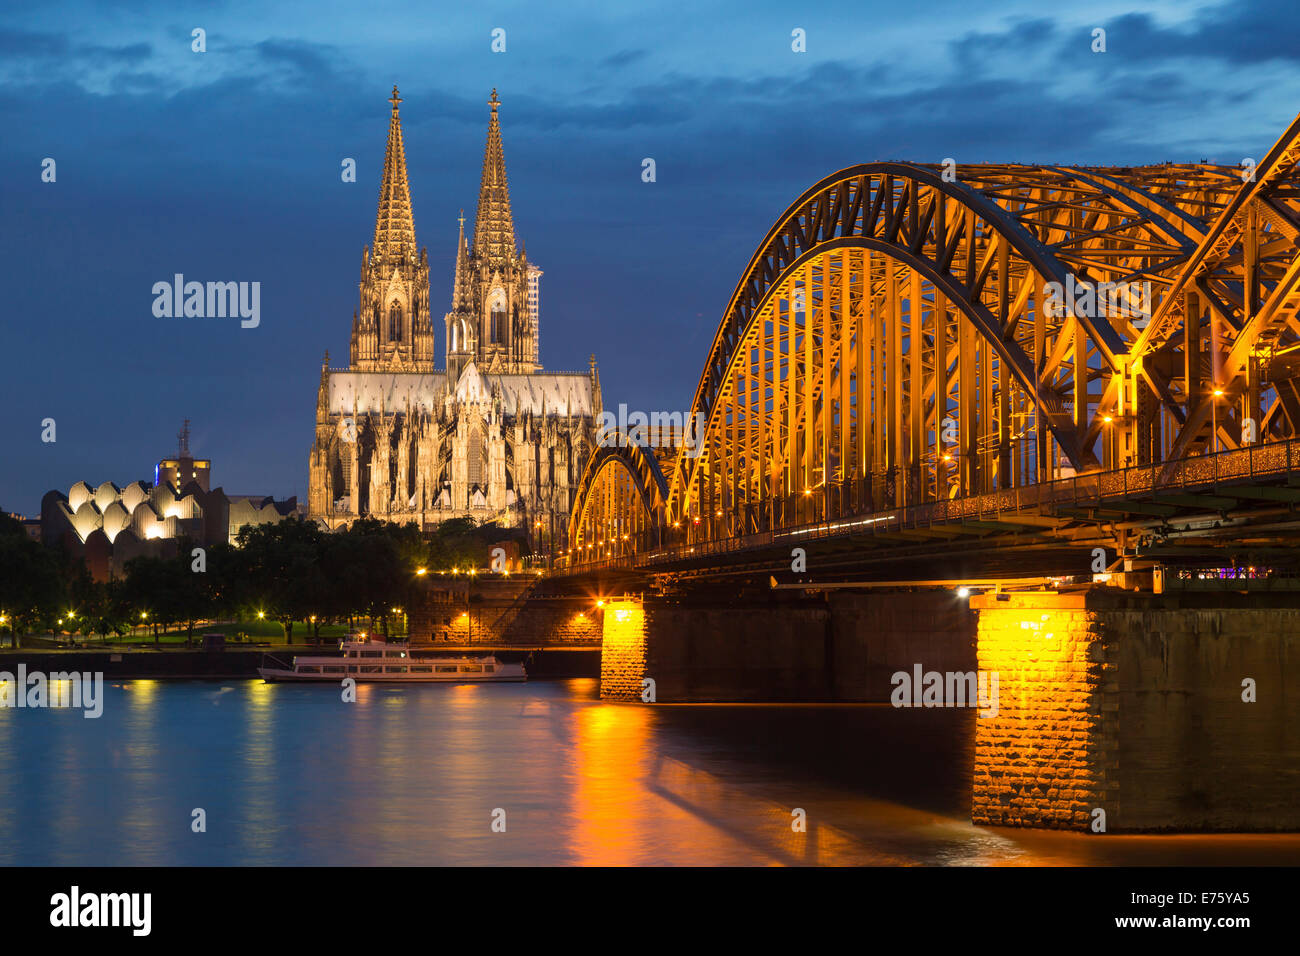 La cathédrale de Cologne avec pont Hohenzollern et Philharmonie de Cologne, au crépuscule, le Rhin à l'avant, Cologne Banque D'Images